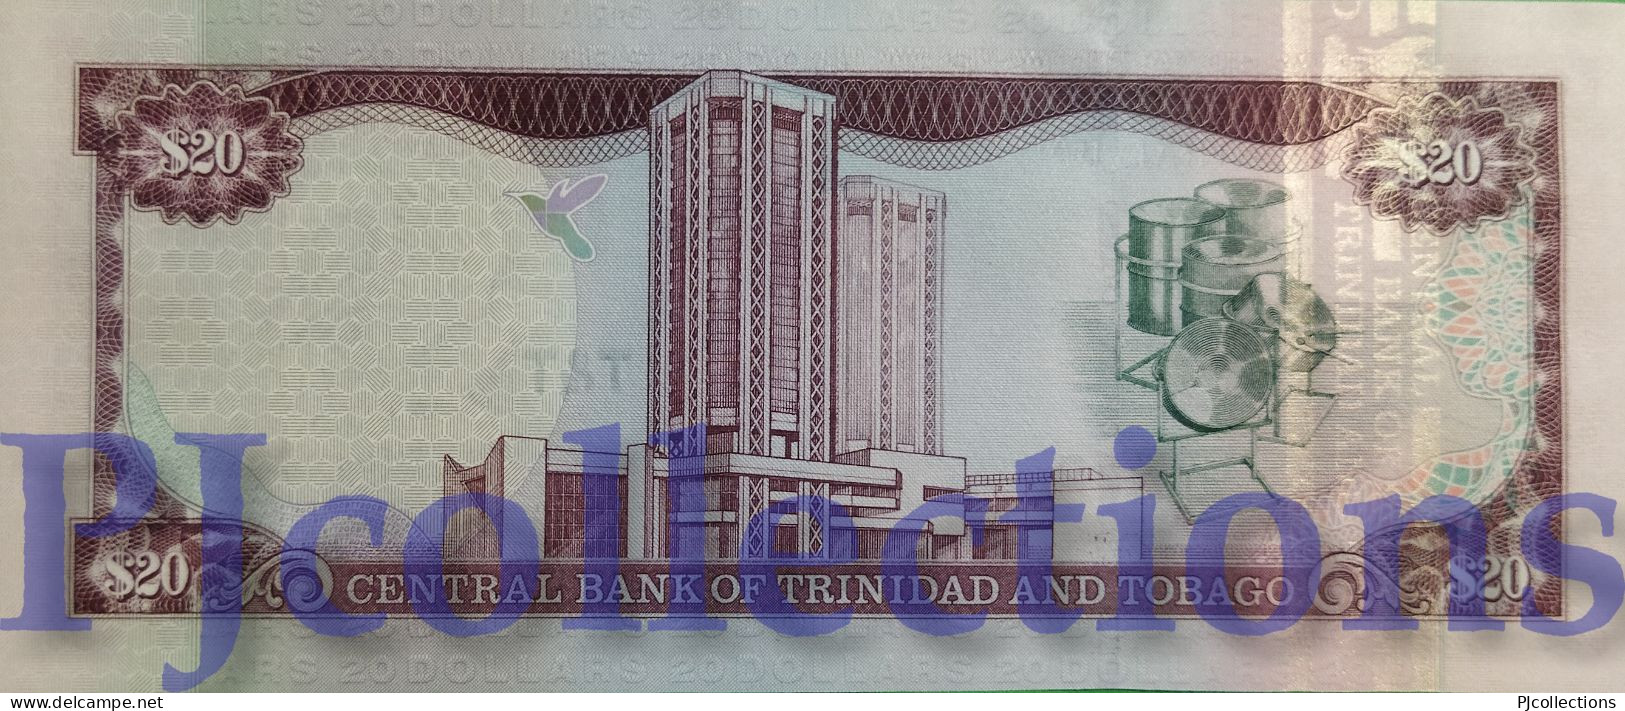 TRINIDAD & TOBAGO 20 DOLLARS 2002 PICK 44a UNC - Trinidad & Tobago